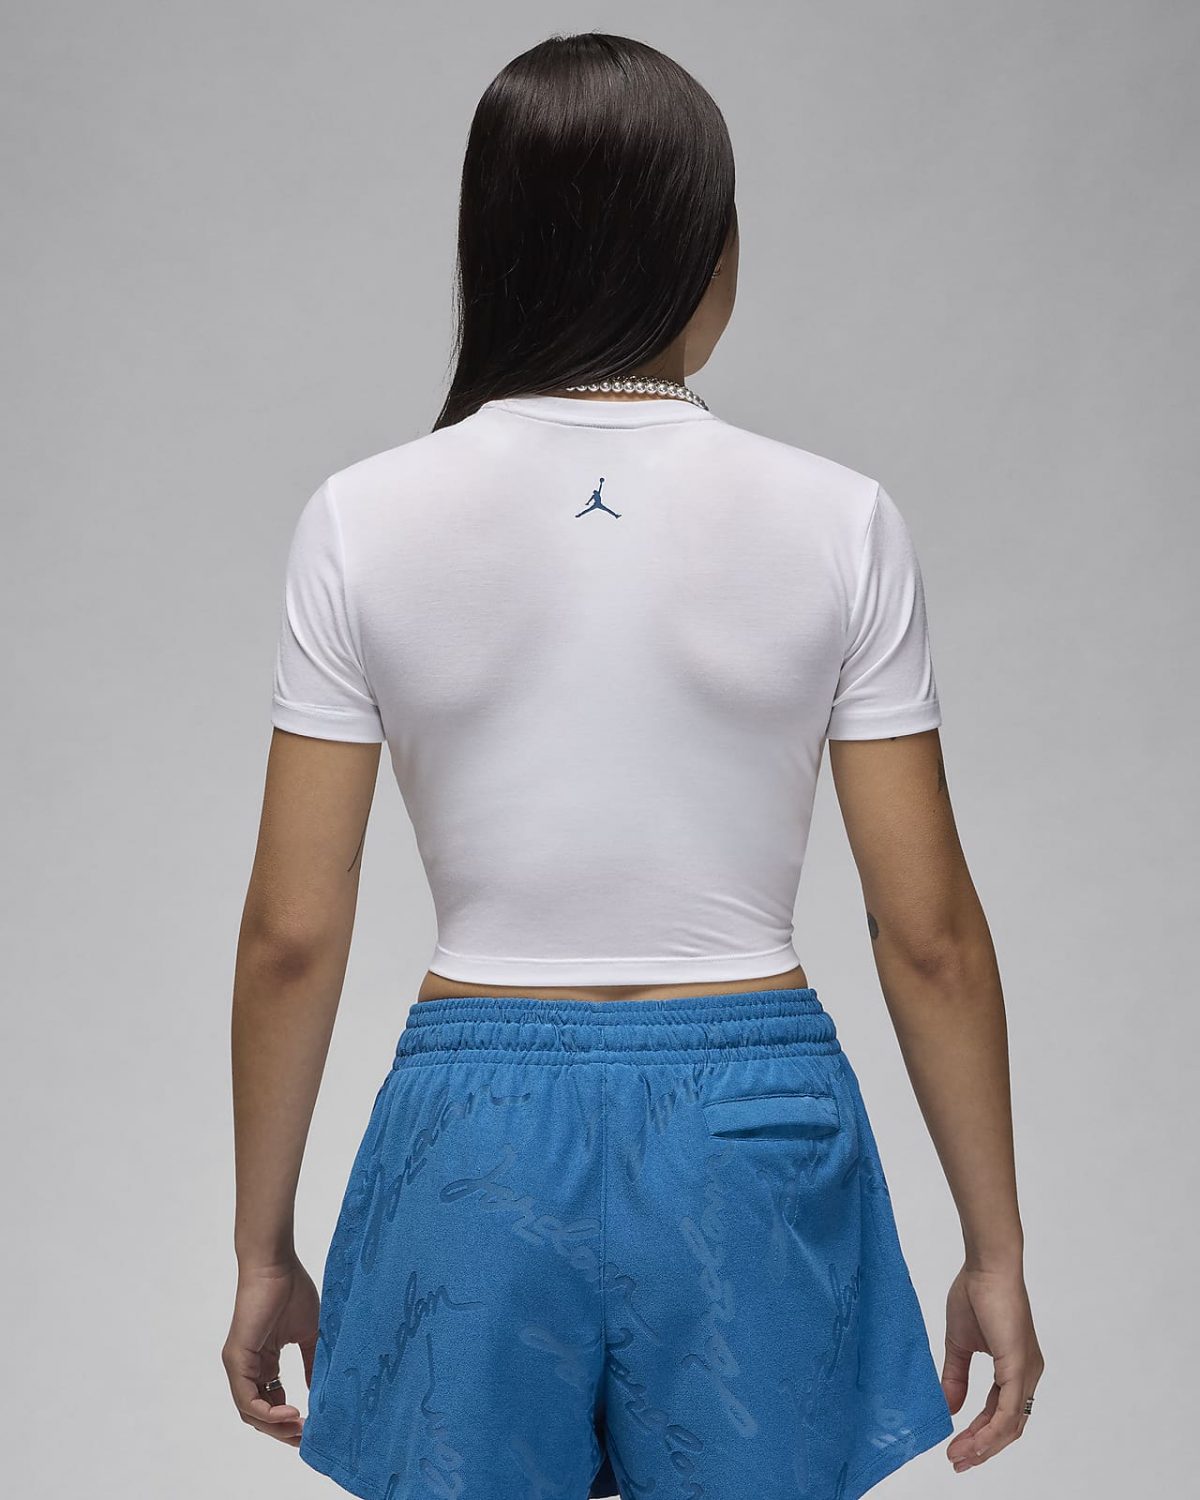 Женская футболка nike Jordan белая фотография